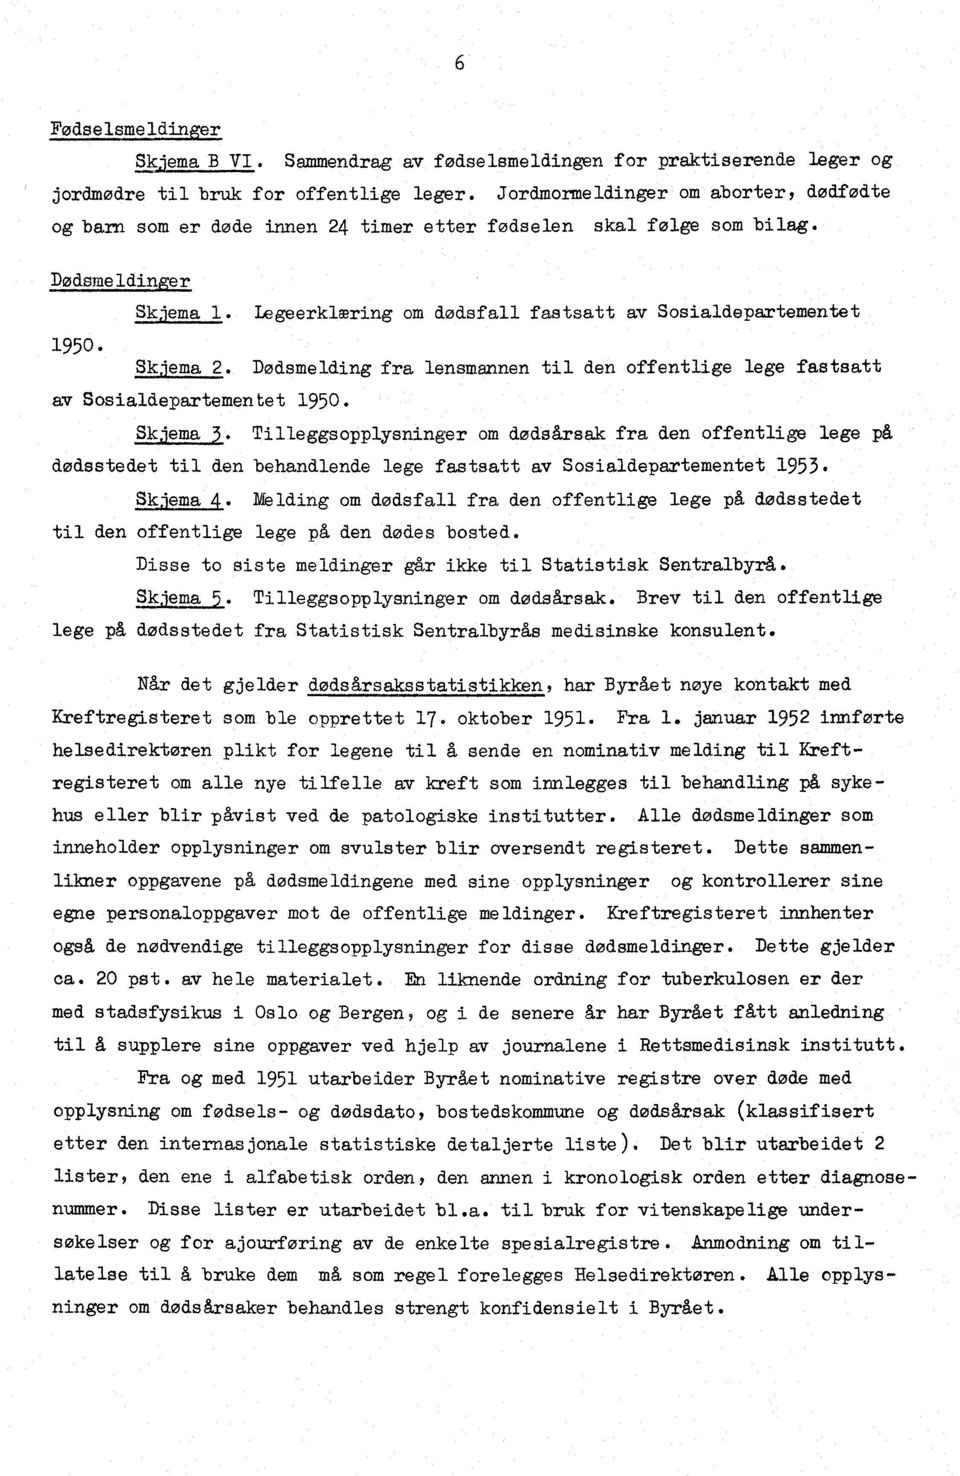 Skjema 2. Dødsmelding fra lensmannen til den offentlige lege fastsatt av Sosialdepartementet 1950. alna l.